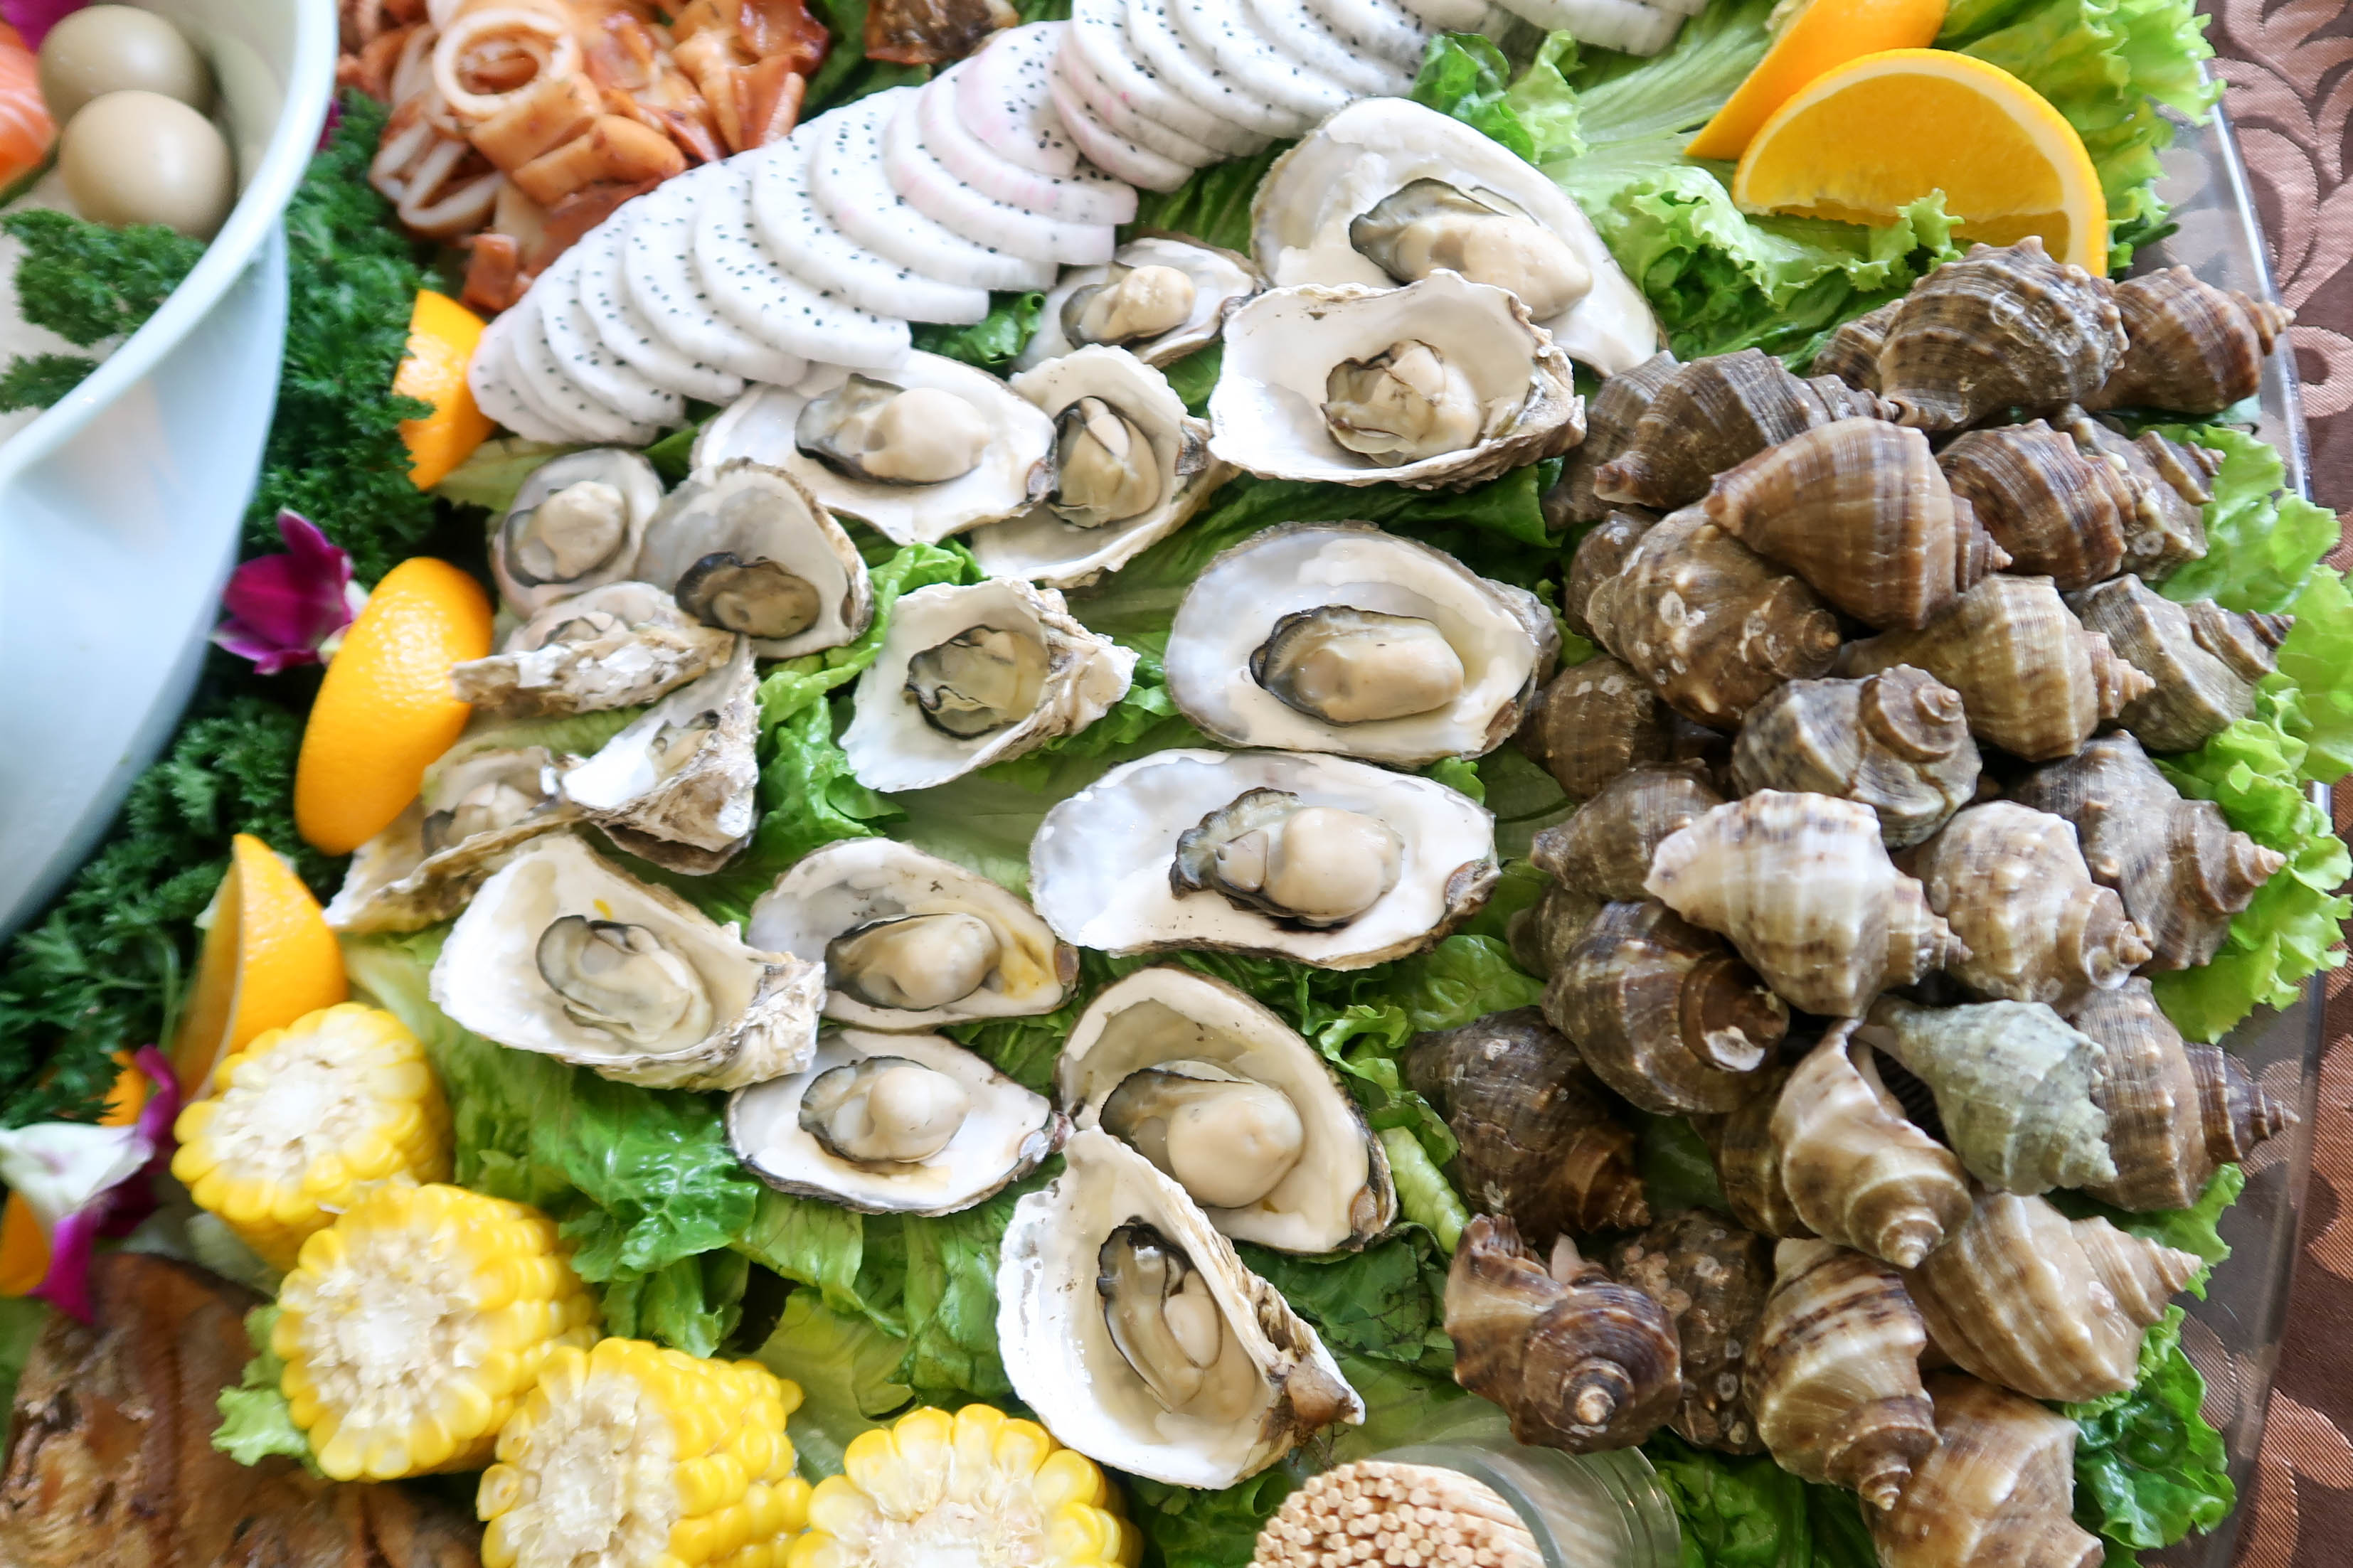 吃在温州:开渔季在雁荡山吃海鲜,不用盘子直接上桌,满满一桌